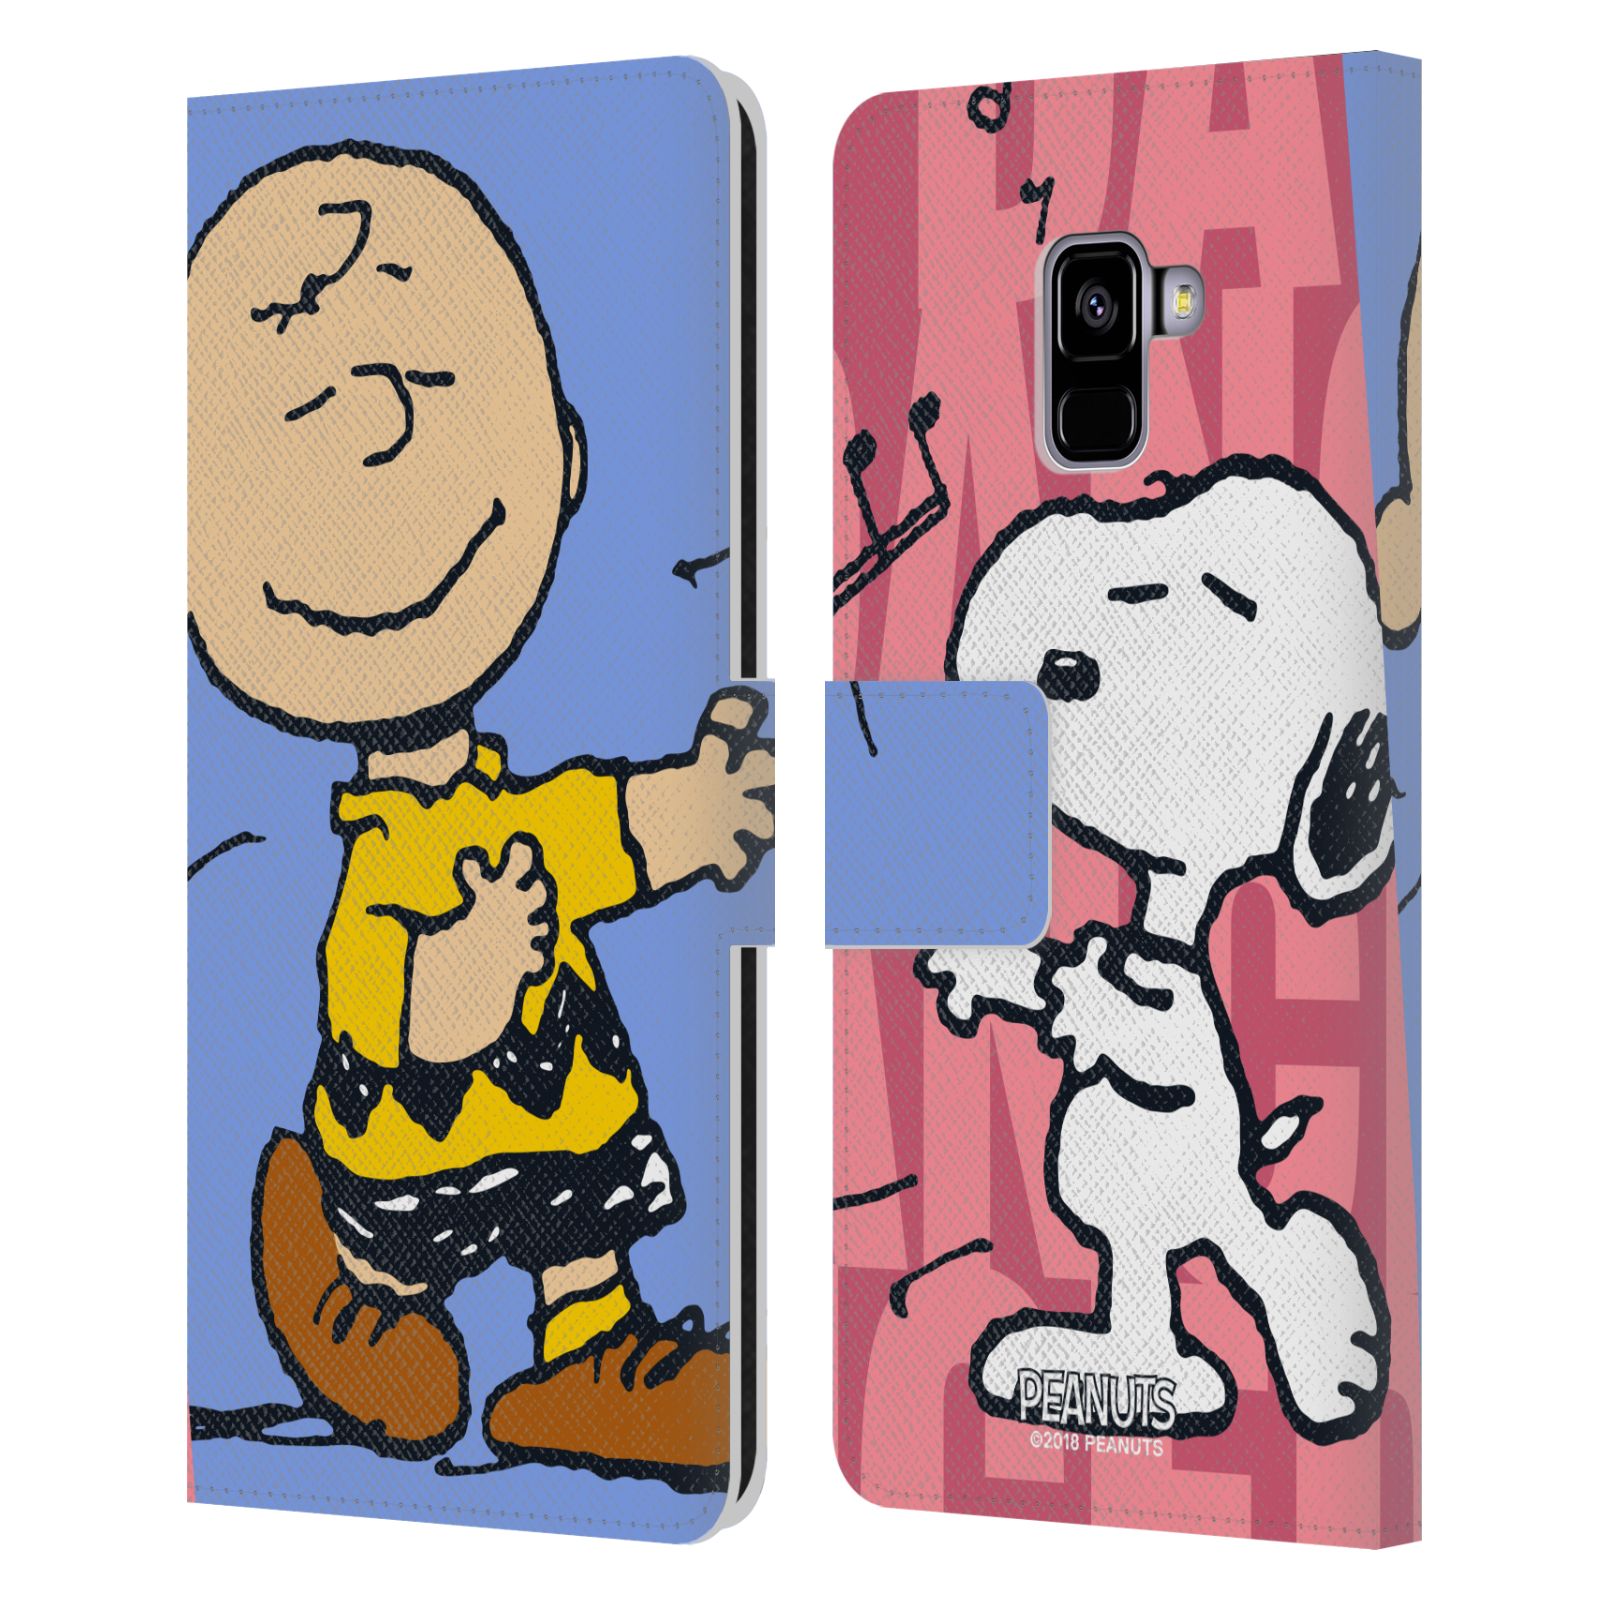 Pouzdro na mobil Samsung Galaxy A8 PLUS 2018 - Head Case - Peanuts - Snoopy a Charlie